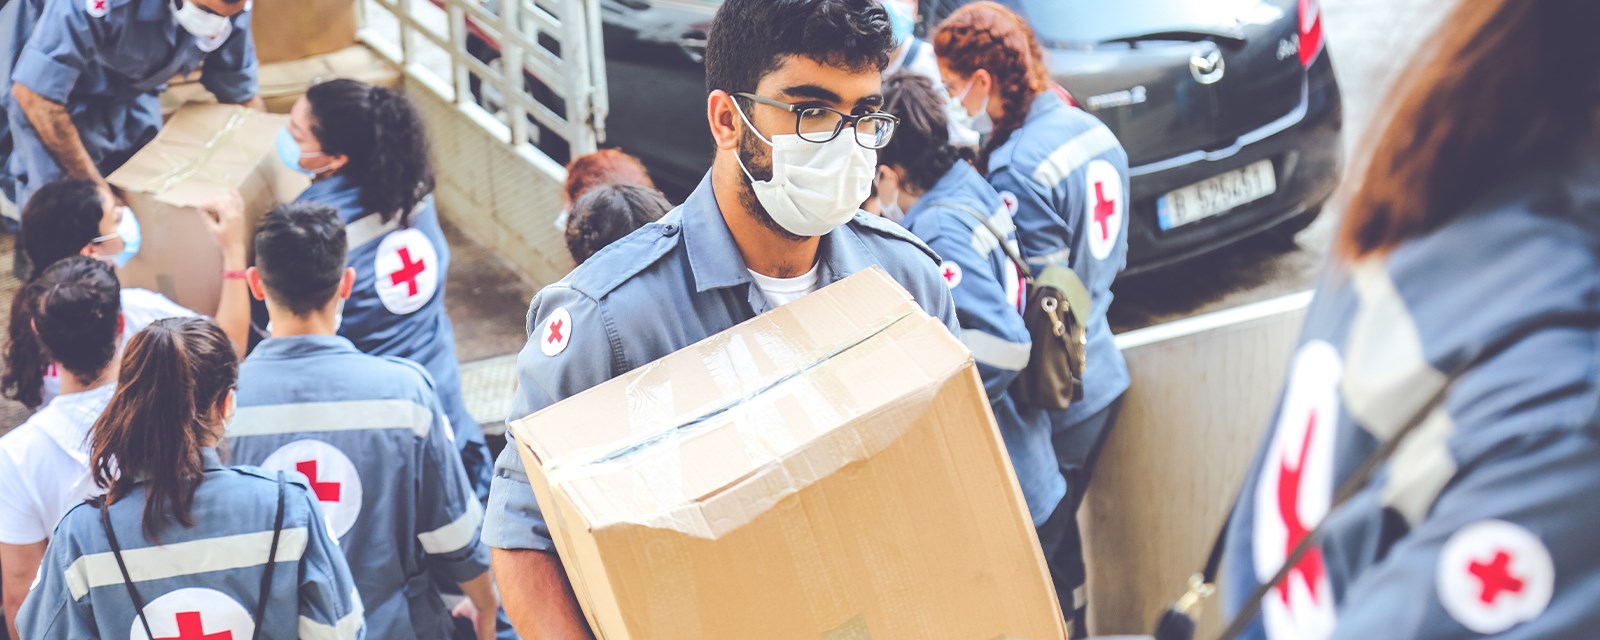 En frivillig fra Røde Kors bærer en kasse